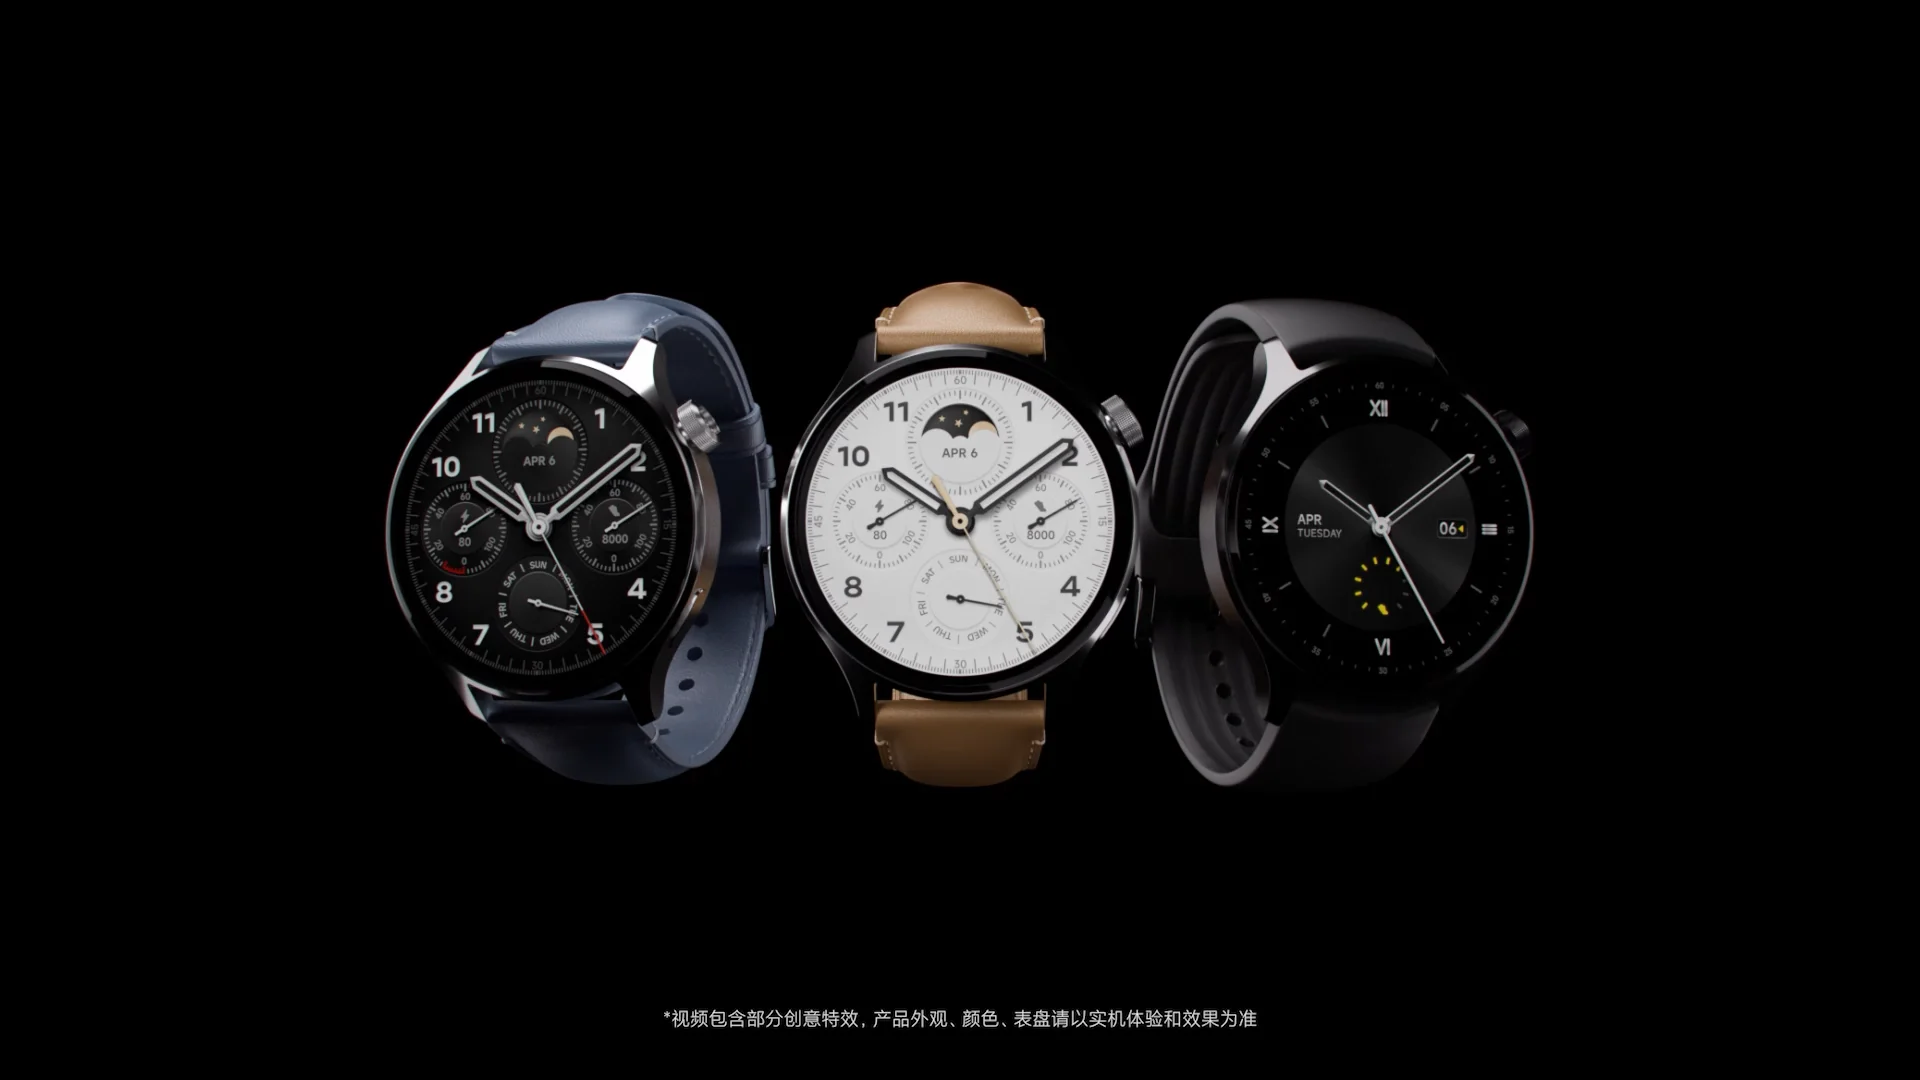 Xiaomi watch s1 Pro. Xiaomi watch s1. Xiaomi watch 2 Pro. Xiaomi watch s1 Pro Global. Xiaomi watch 8 pro